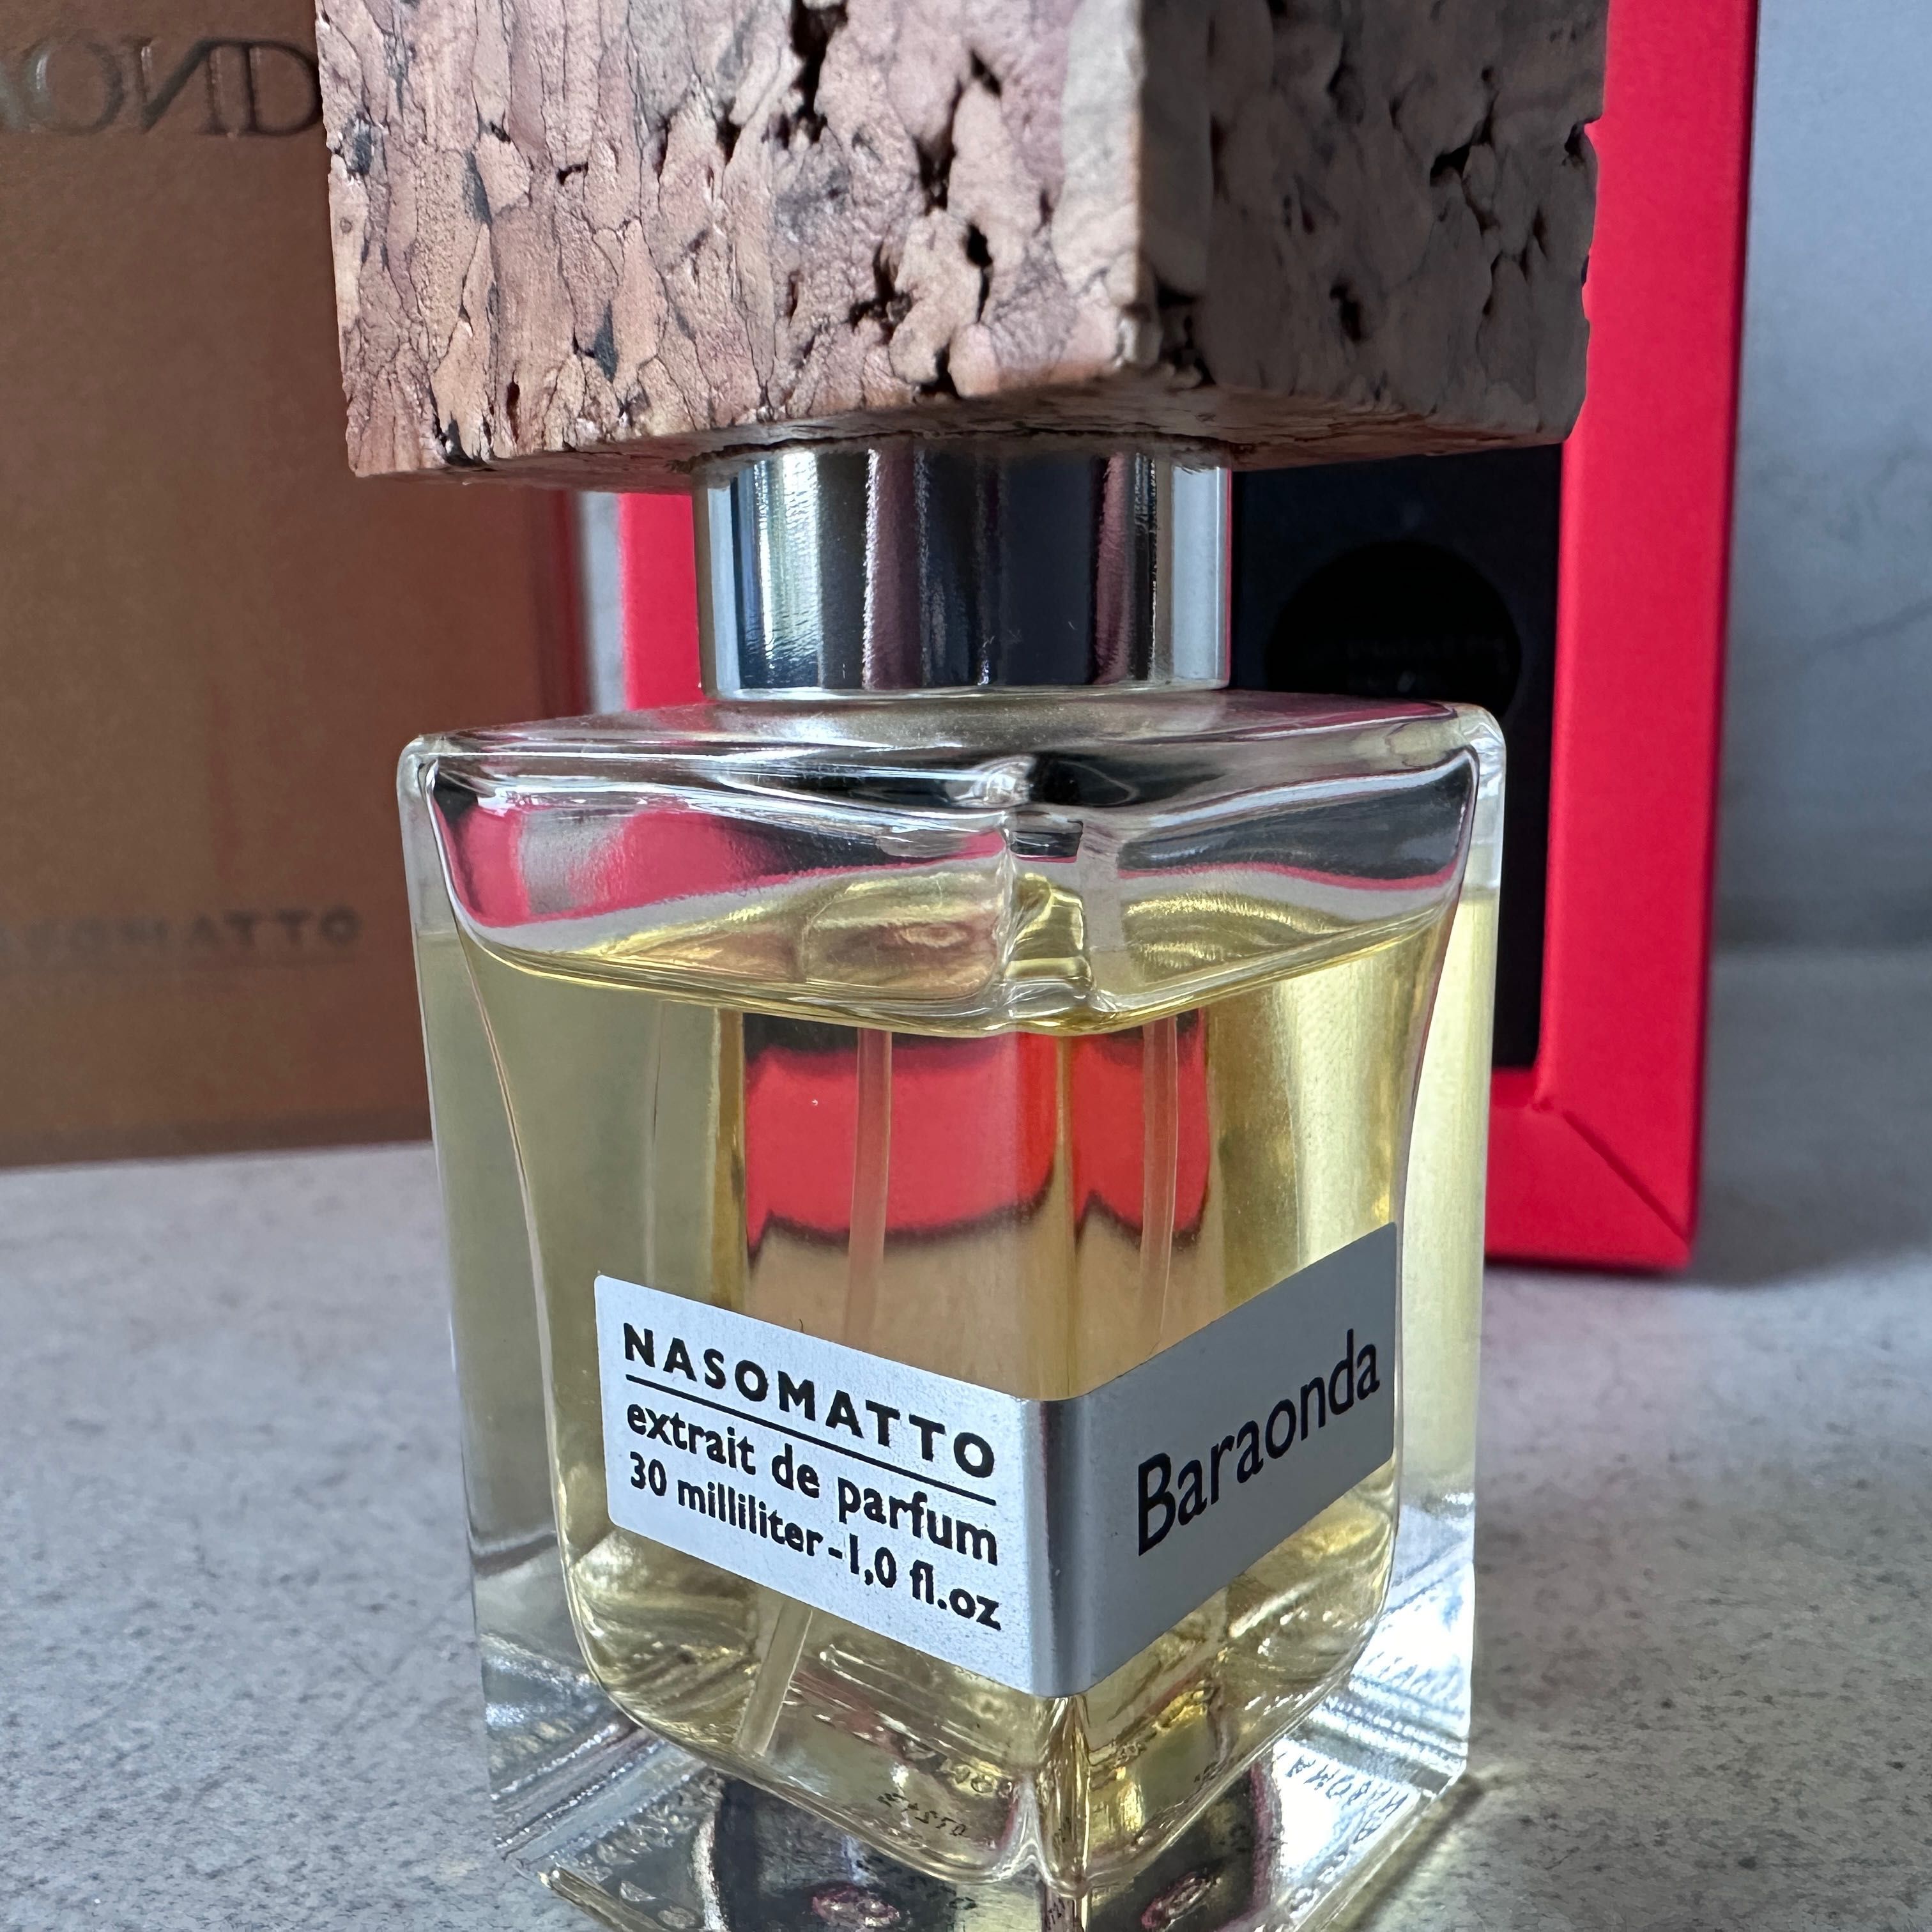 Nasomatto Baraonda ekstrakt perfum 30 ml